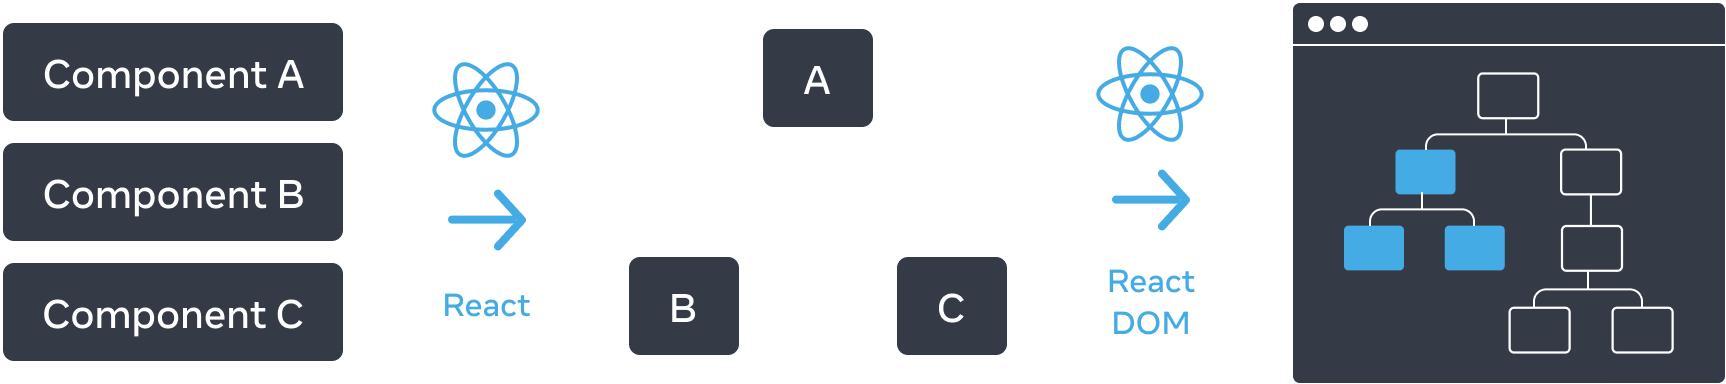 가로로 배열된 세 부분으로 구성된 다이어그램입니다. 첫 번째 부분에는 '컴포넌트 A', '컴포넌트 B', '컴포넌트 C'라는 레이블이 붙은 세 개의 직사각형이 수직으로 쌓여 있습니다. 다음 패널로 넘어가는 화살표는 위에 React 로고가 있고 'React'라고 레이블이 붙어 있습니다. 중간 섹션에는 'A'라고 레이블이 붙은 루트와 'B', 'C'라고 레이블이 붙은 두 자식이 있는 컴포넌트 트리가 포함되어 있습니다. 다음 섹션은 다시 위에 React 로고가 있는 화살표를 사용하여 'React DOM'이라는 레이블과 함께 전환됩니다. 세 번째이자 마지막 섹션은 브라우저의 와이어프레임으로, 8개의 노드가 있는 트리를 포함하고 있으며, 그 중 일부분만 강조되어 있습니다(중간 섹션에서 파생된 서브트리를 나타냅니다).